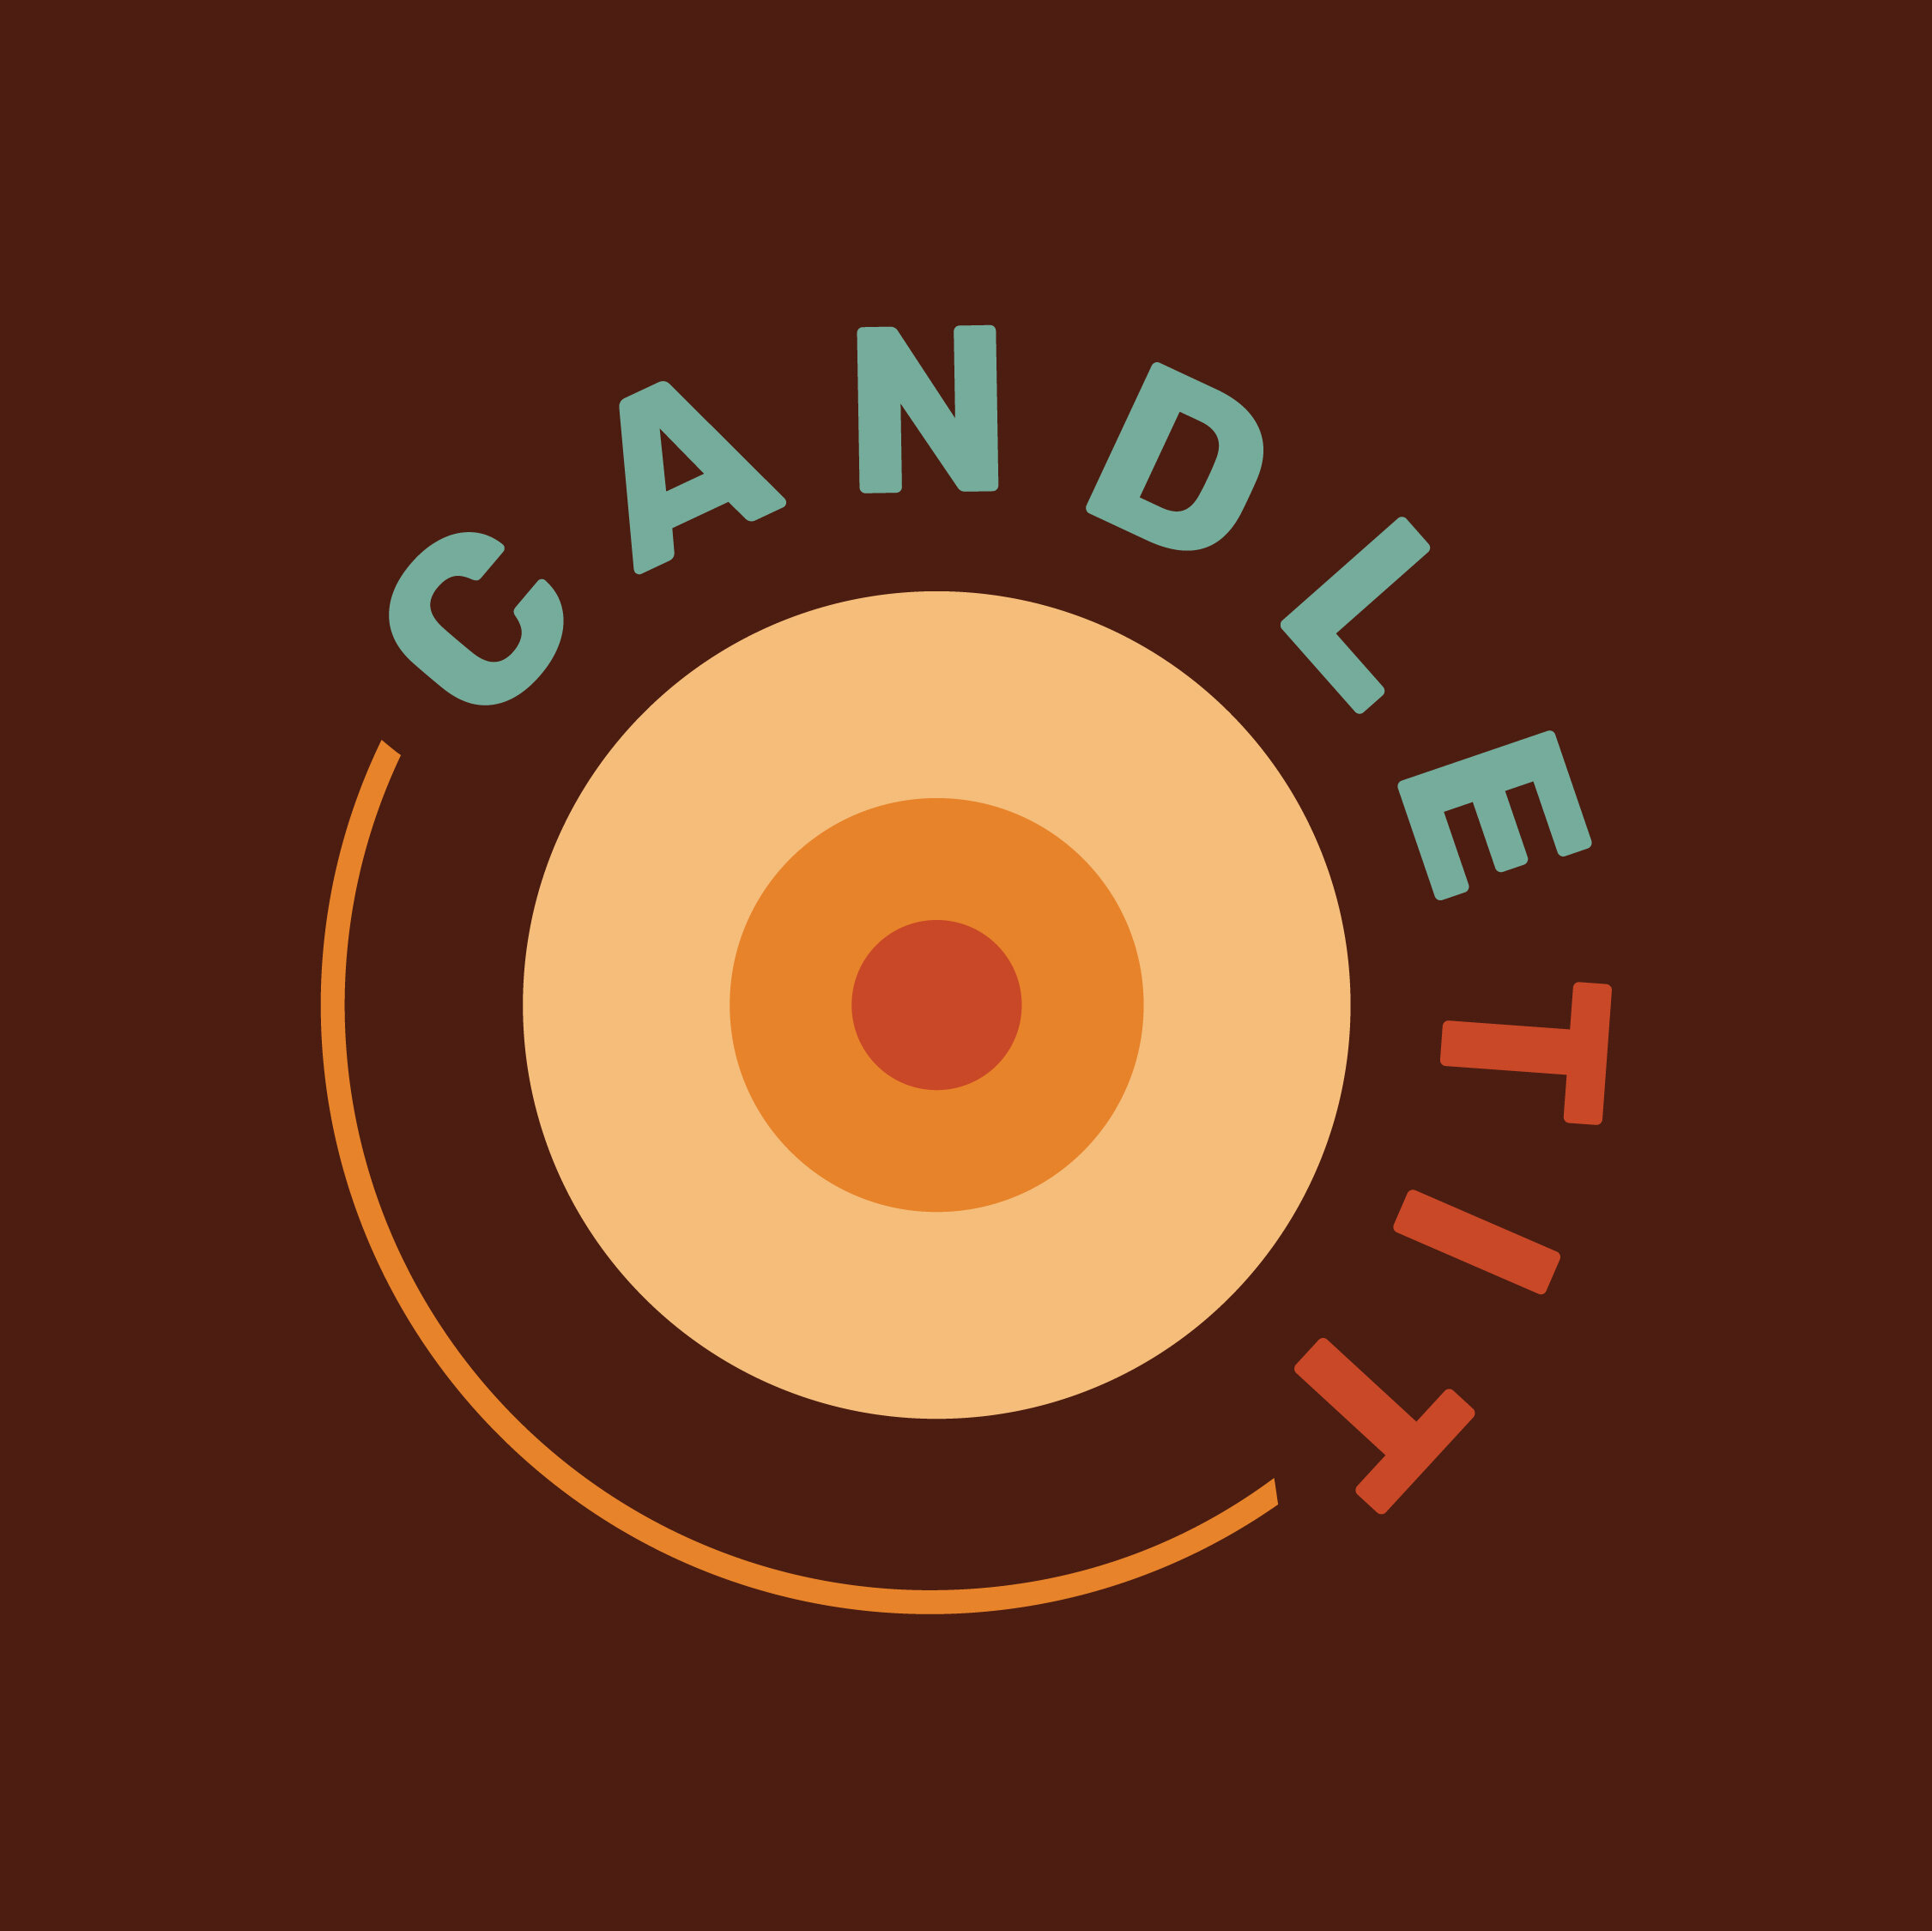 CandleTit-SocialGraphics-LetteringWorks-02.jpg